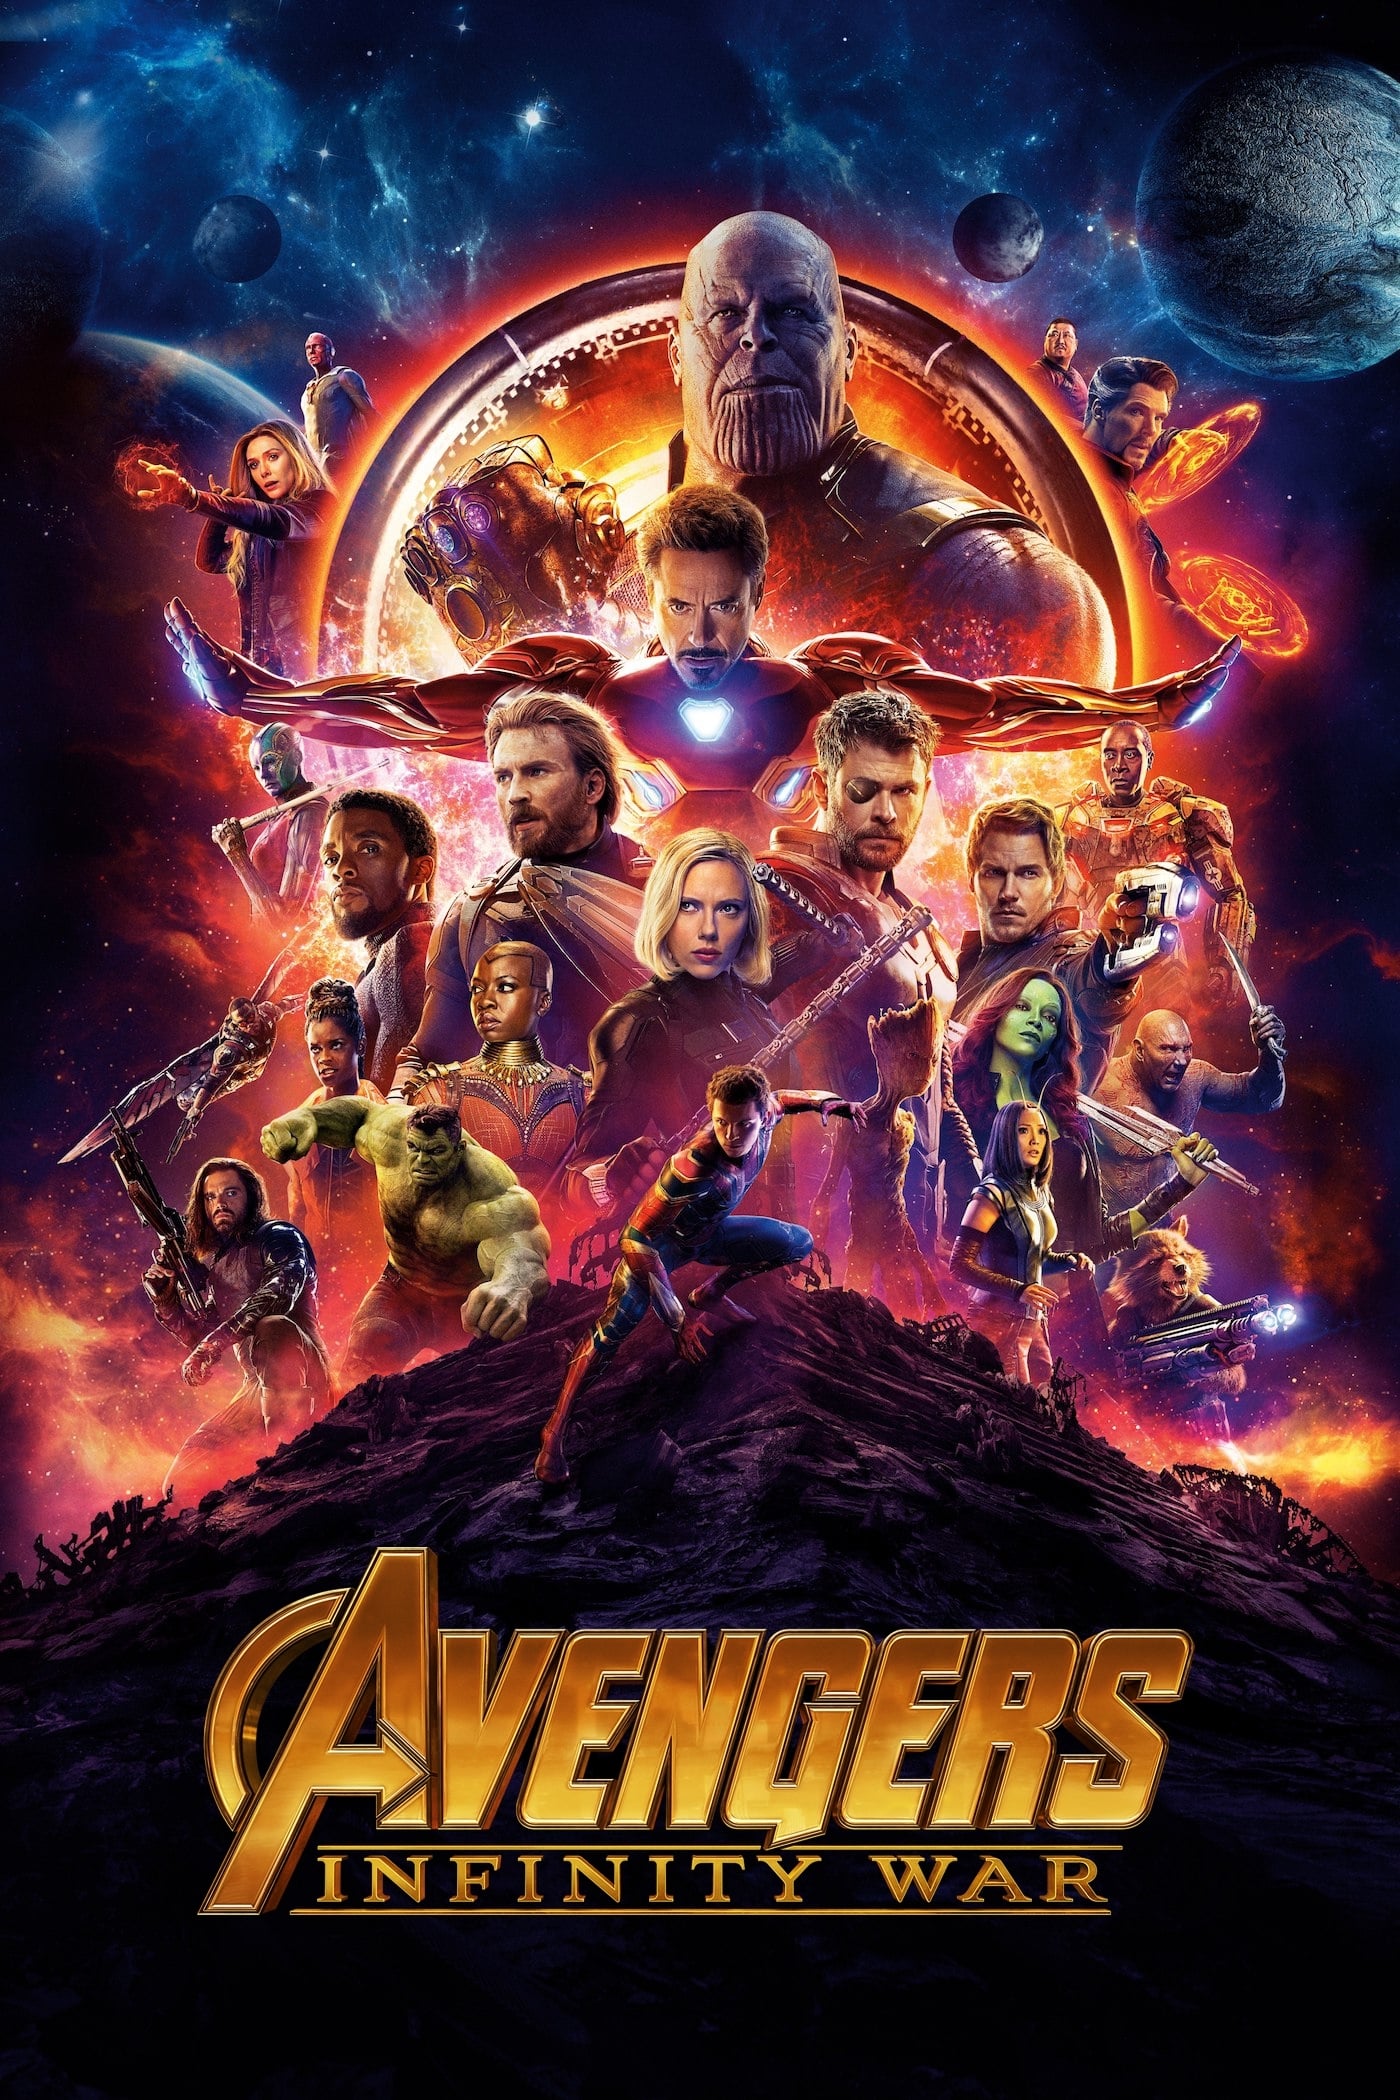 Avengers: Infinity War (2018) Dual Audio [Hindi + English] BluRay Full Movie